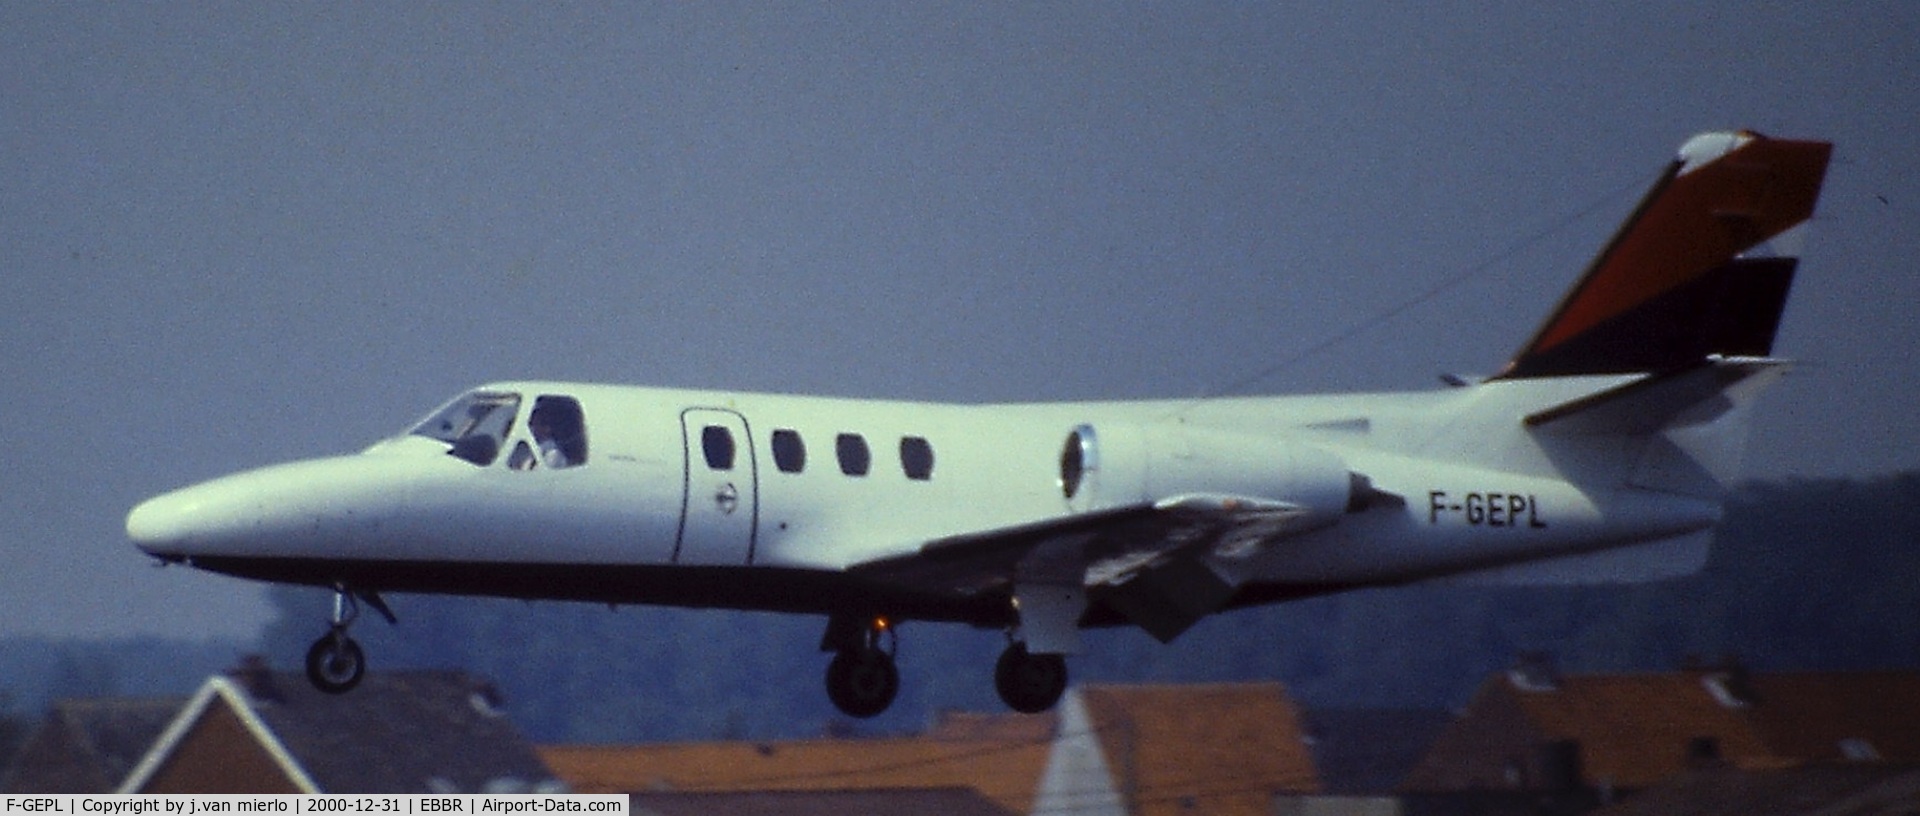 F-GEPL, 1976 Cessna 500 Citation I C/N 500-0164, Landing 25L at Brussels